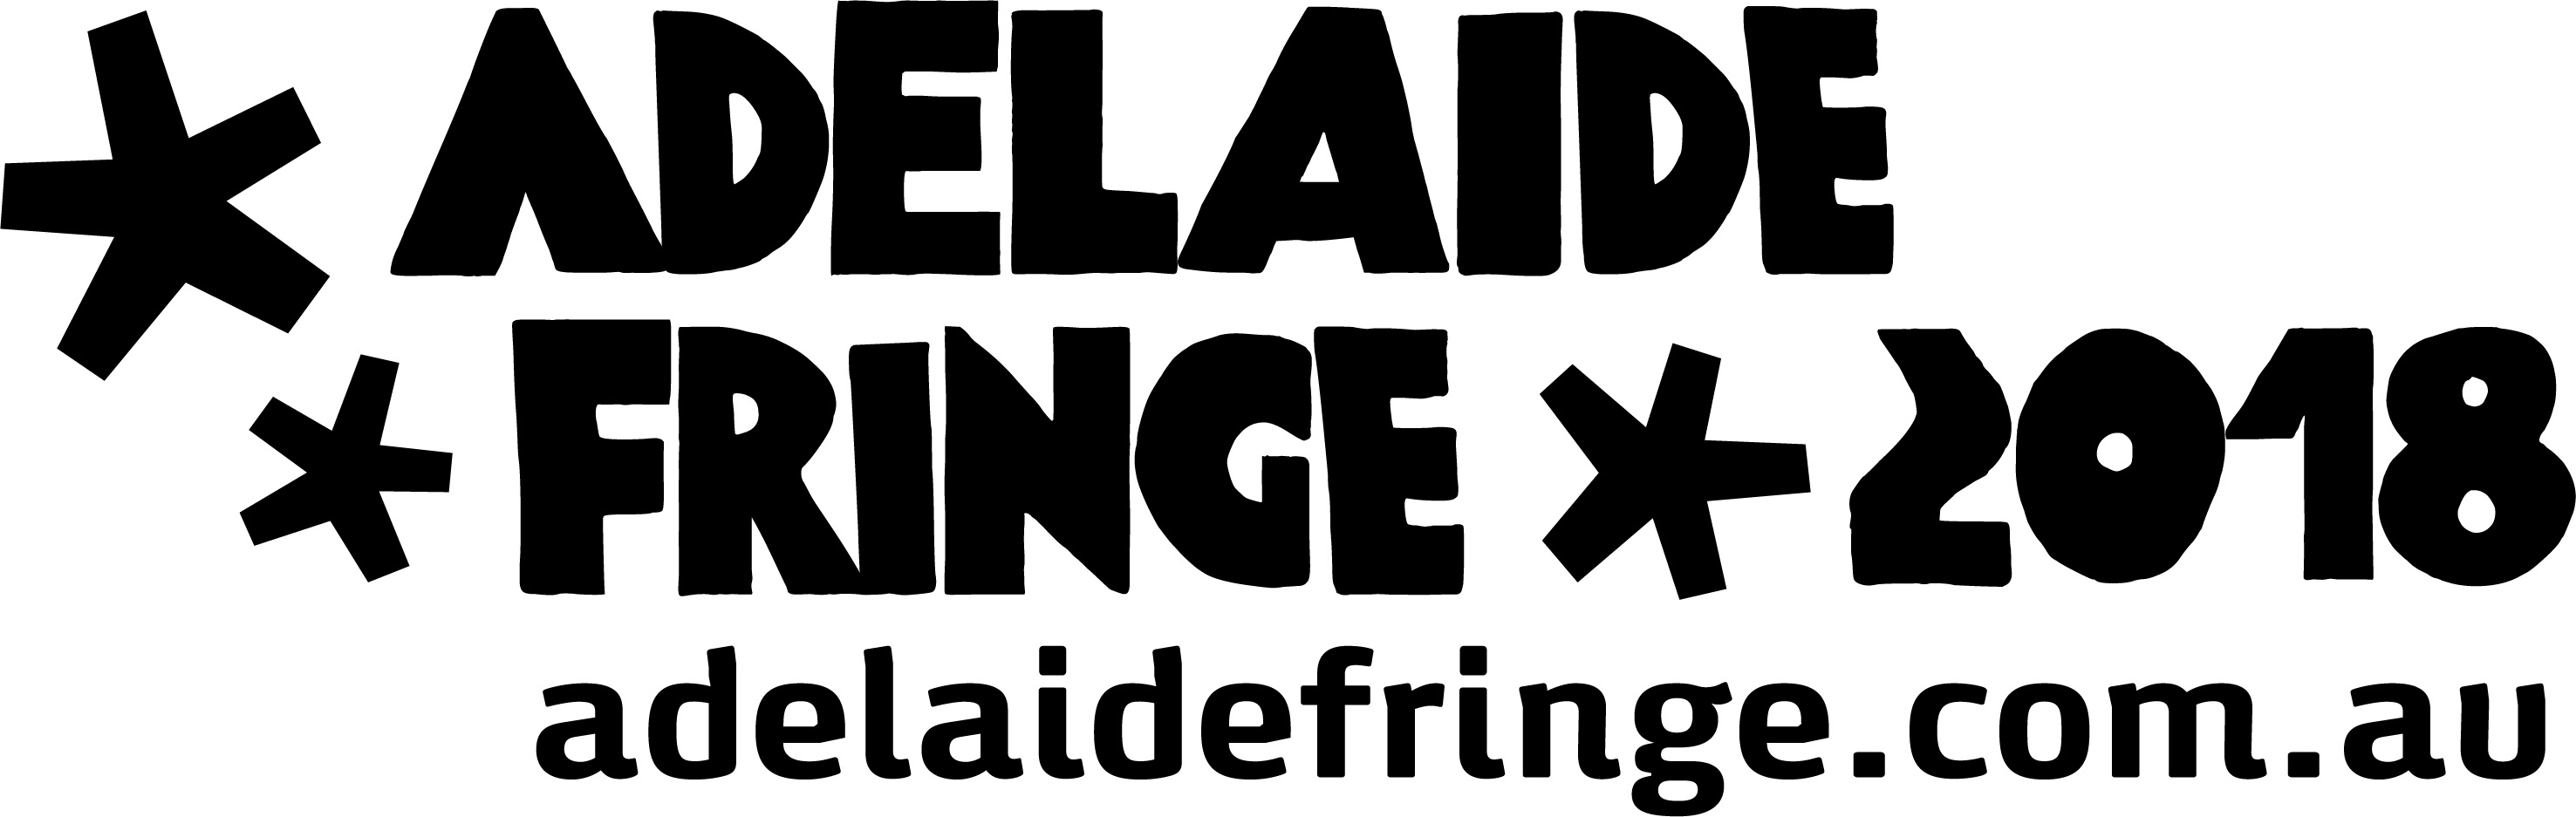 Adelaide Fringe Logo.jpg